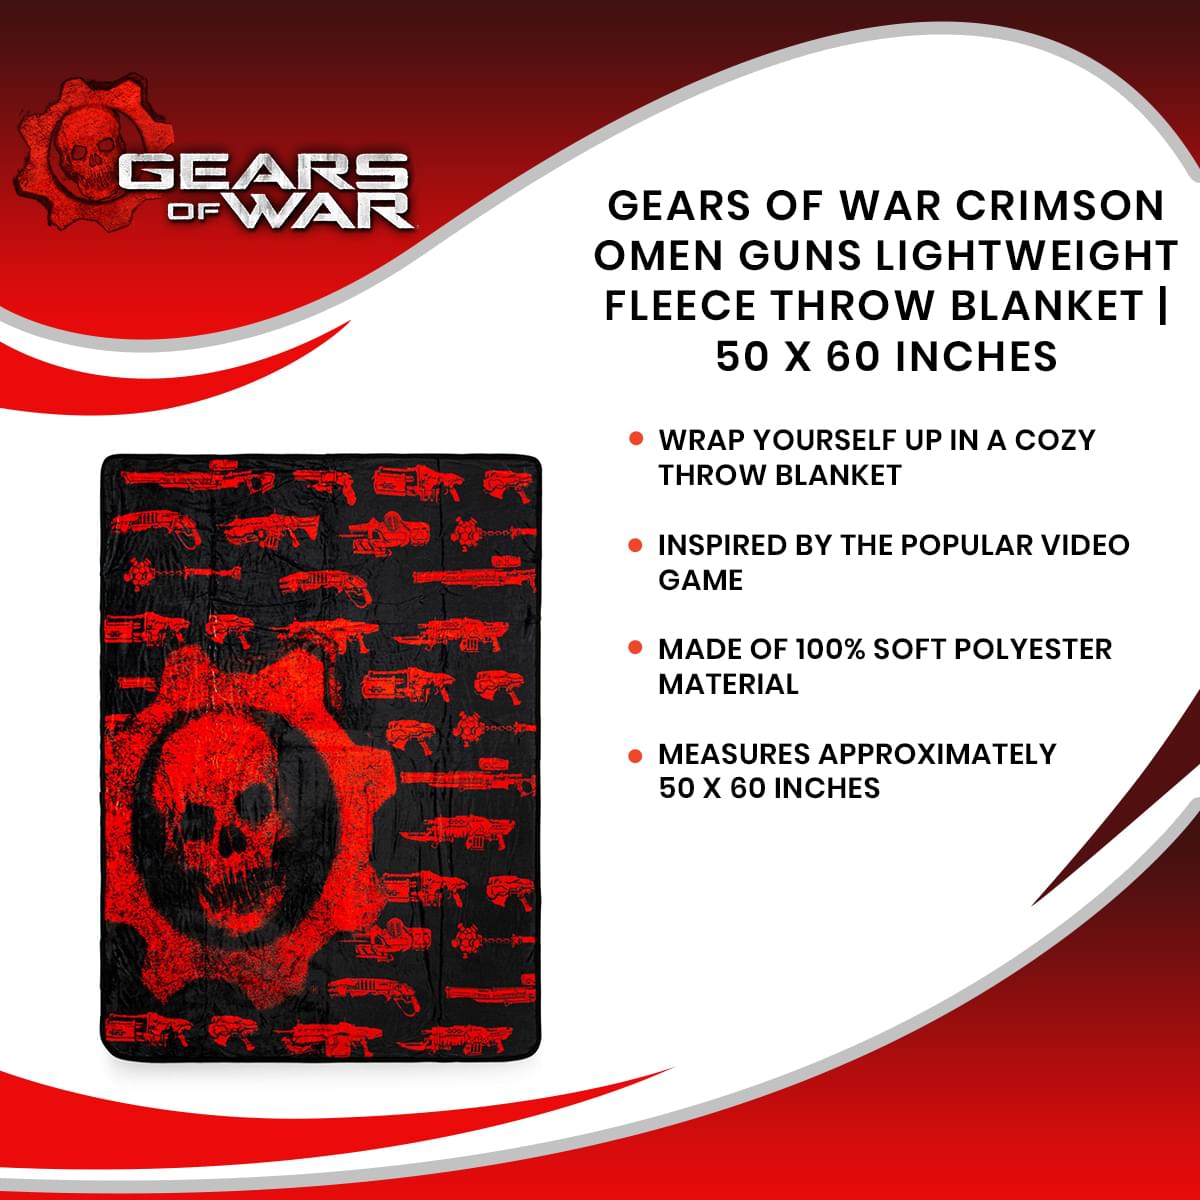 Gears of War Crimson Omen Guns Lightweight Fleece Throw Blanket | 50 x 60 Inches